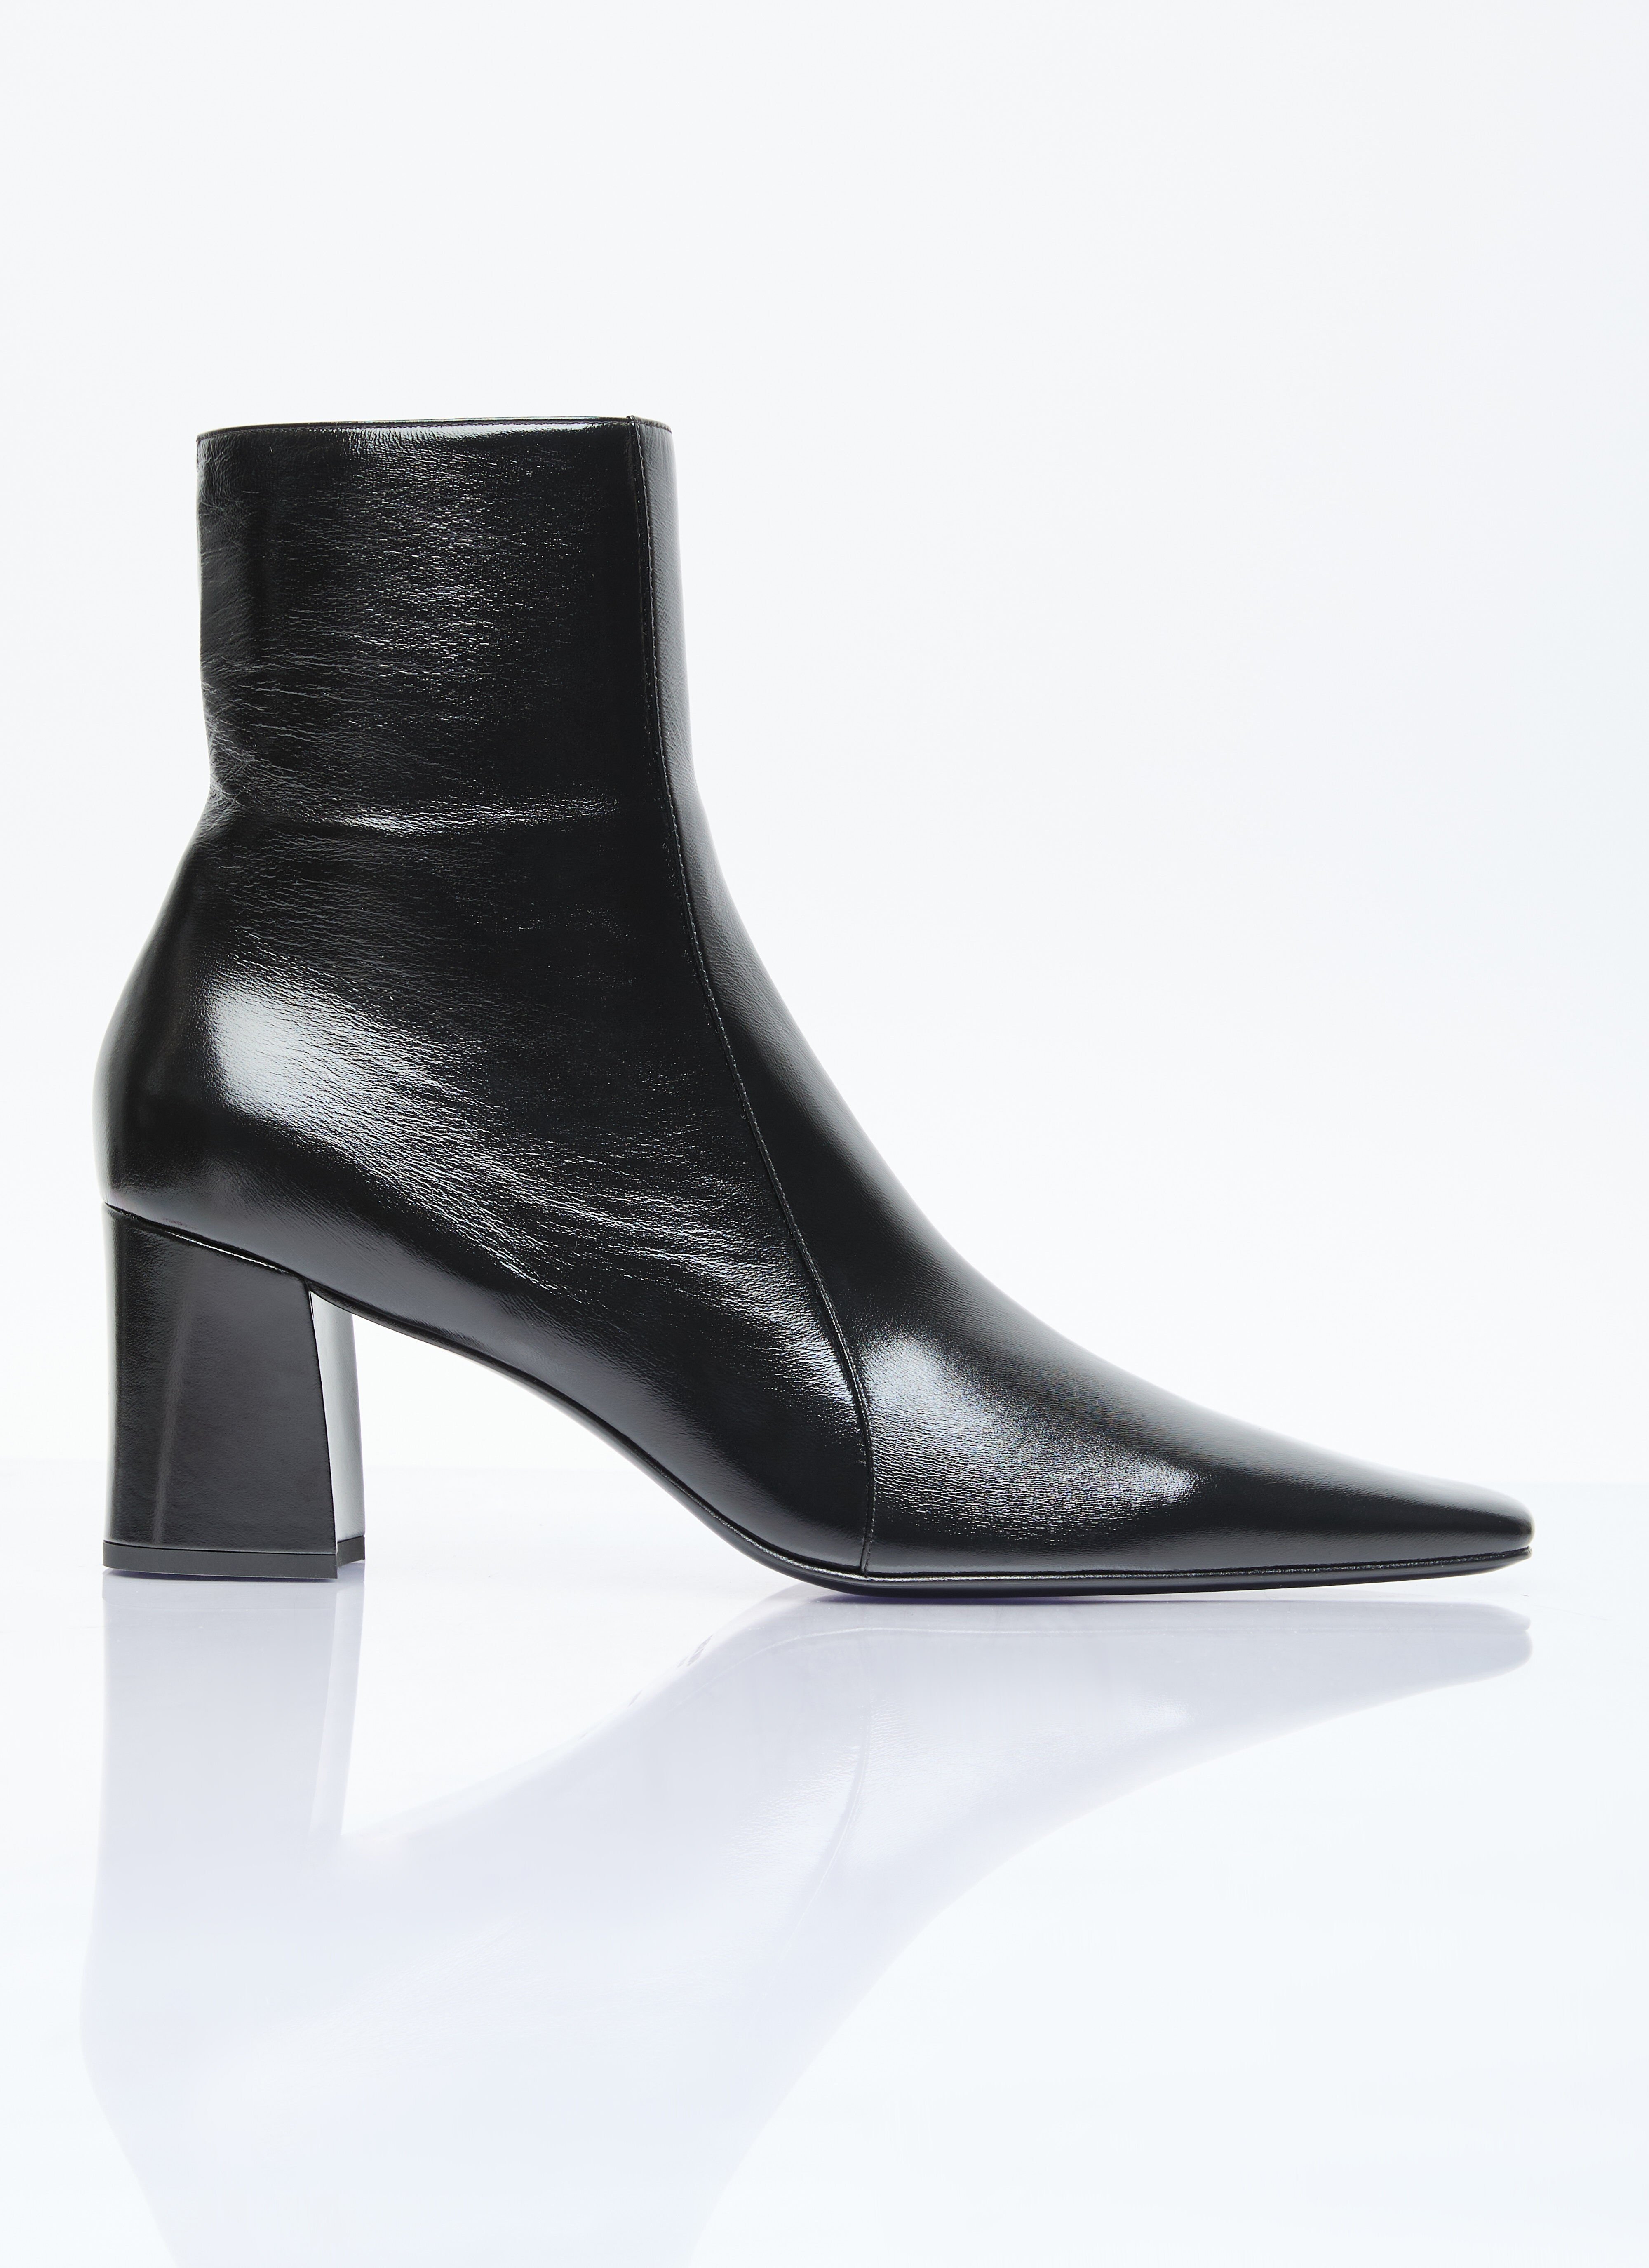 Saint Laurent Rainer Zipped Boots Black sla0156019